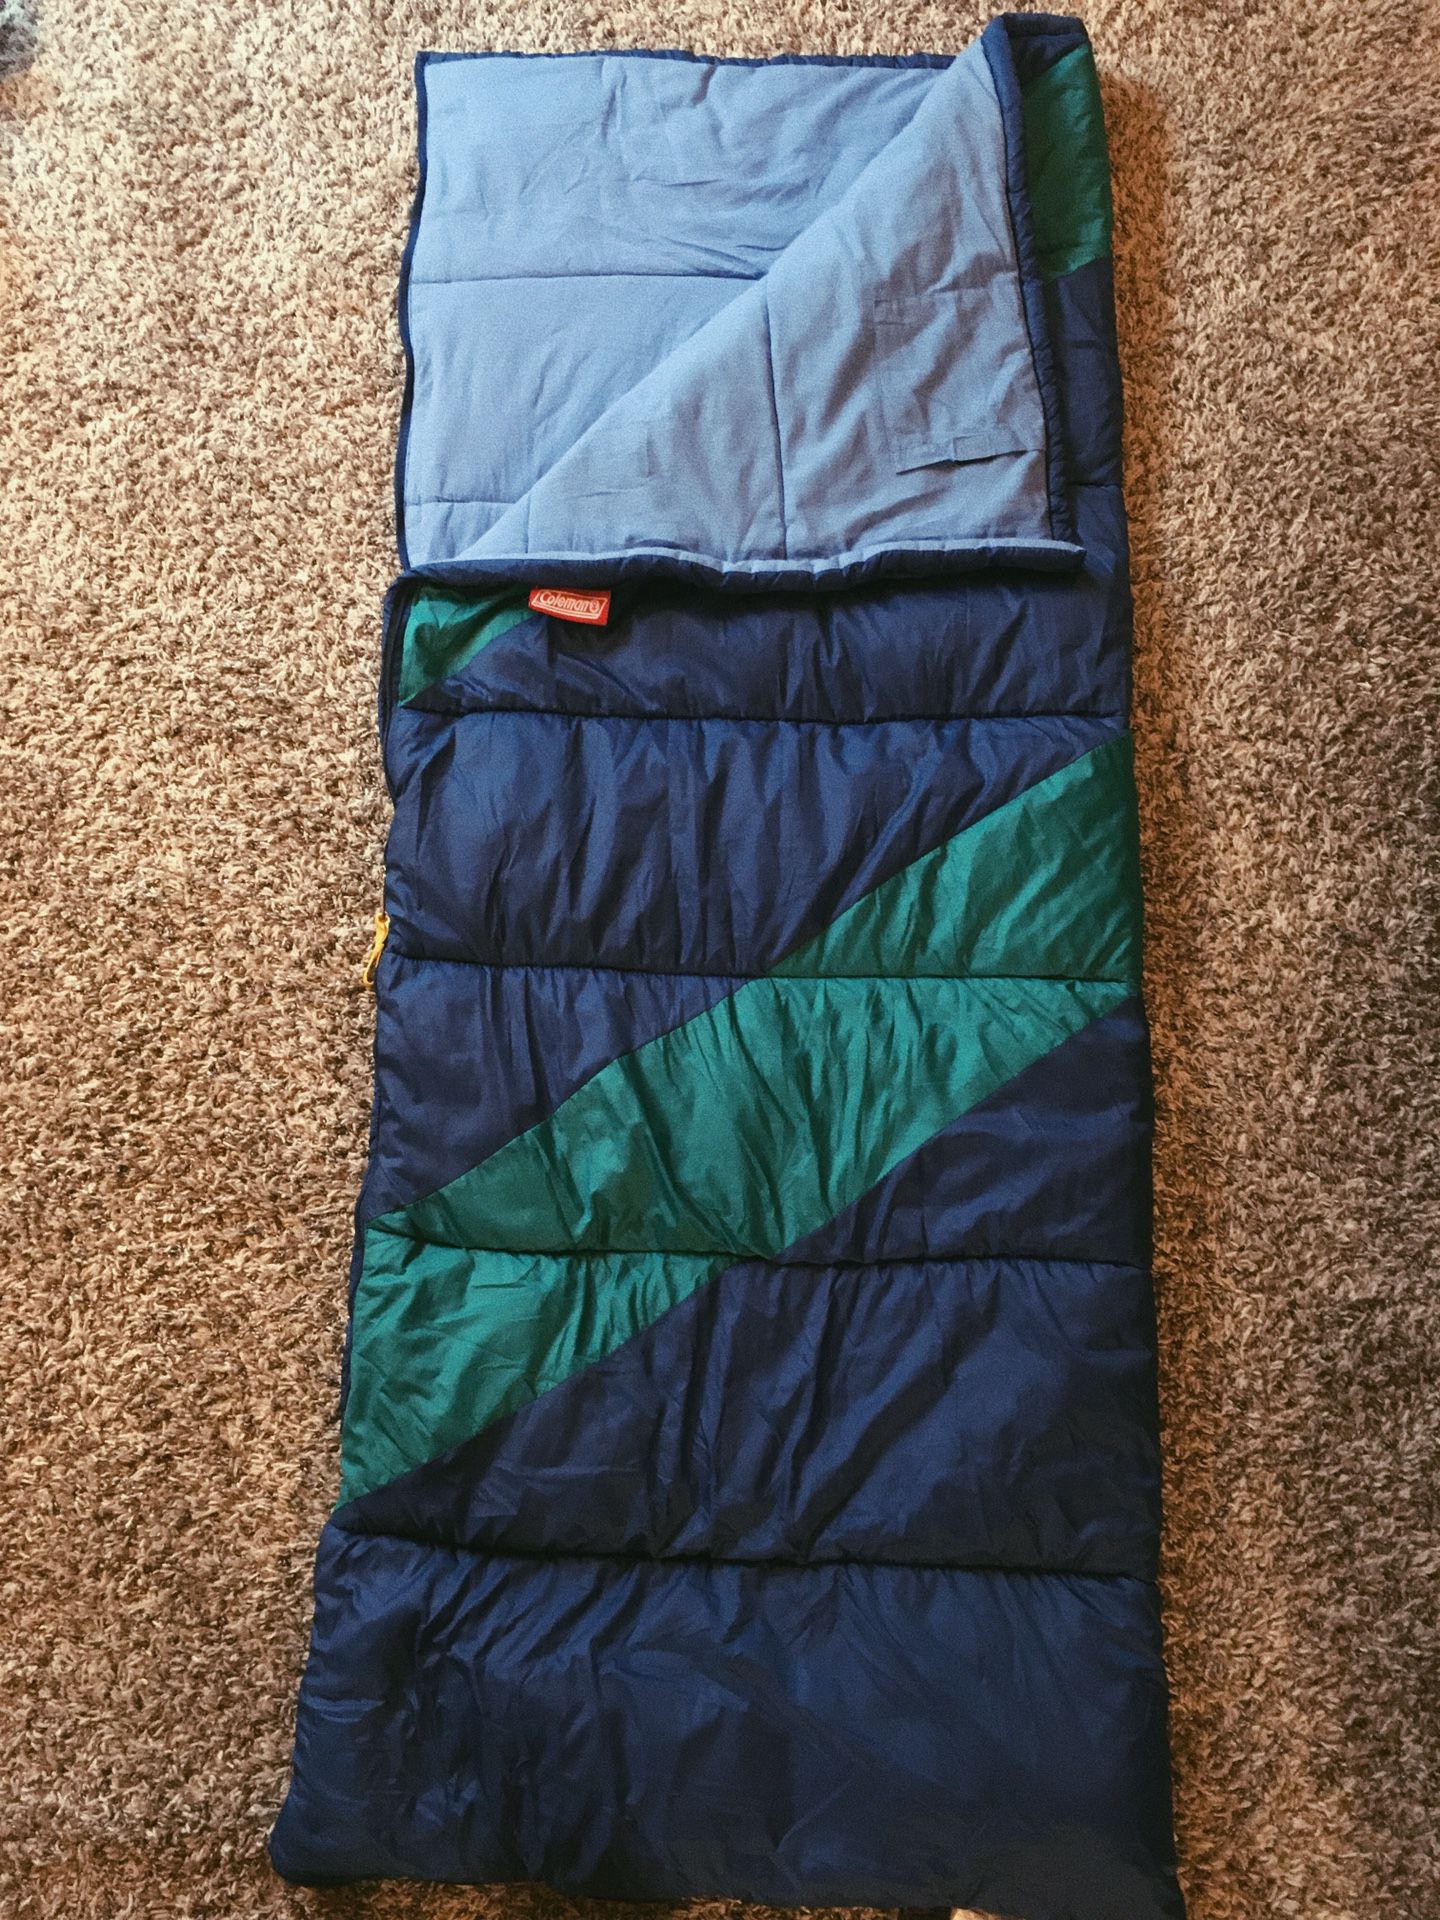 Blue/Green Coleman sleeping bag